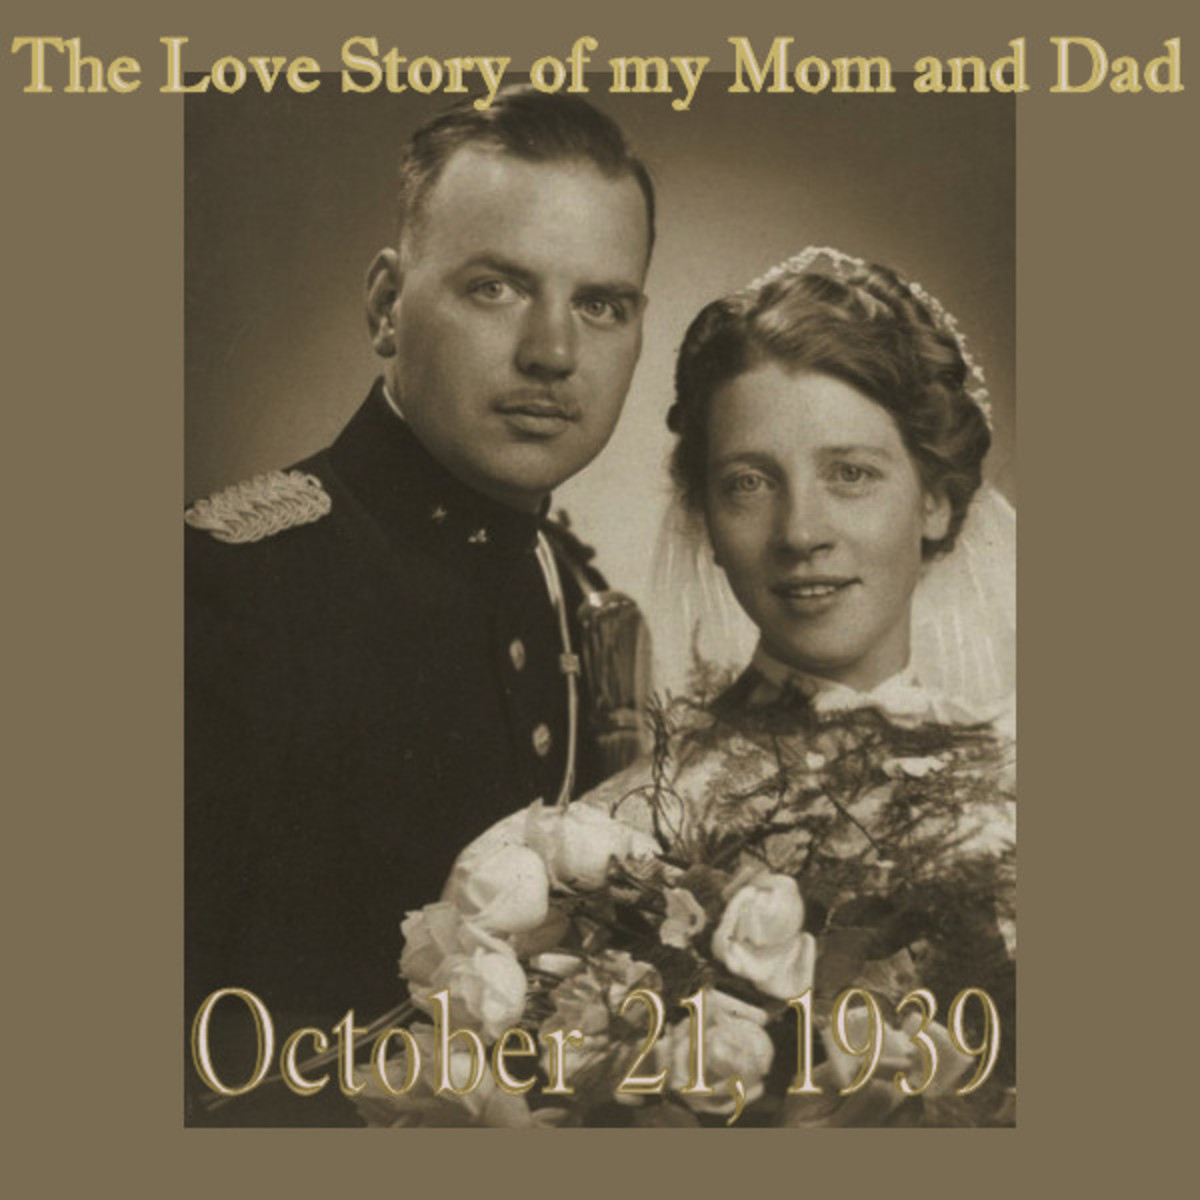 Synco Schram de Jong and Geertje (Muys) Meijst married on October 21, 1939